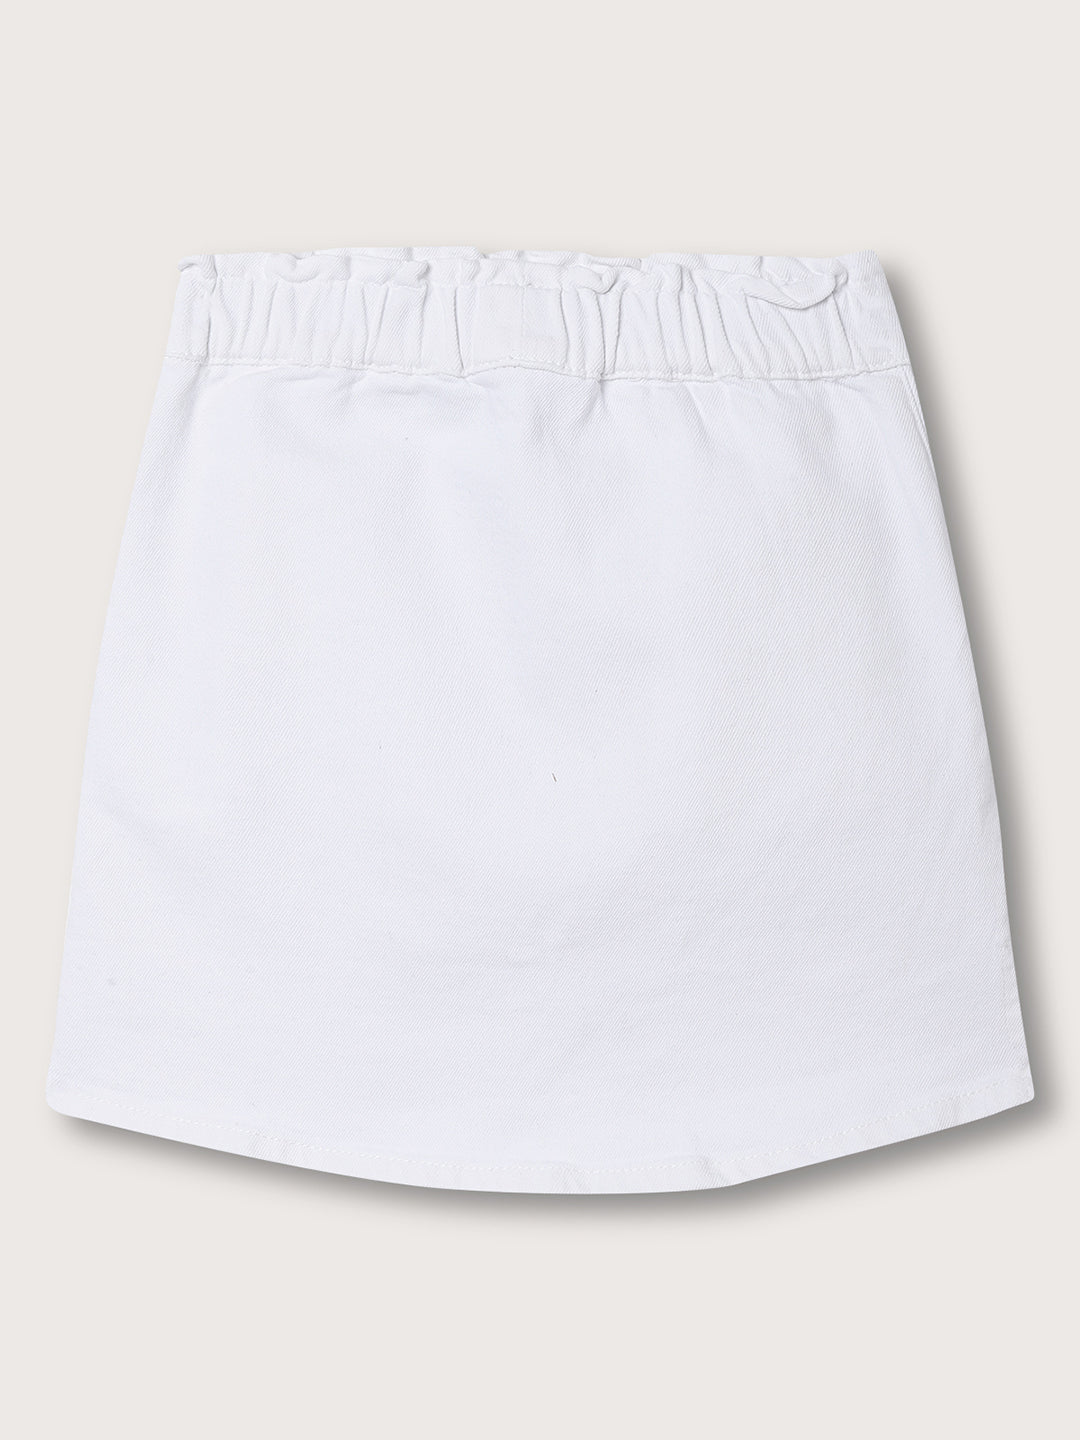 Elle Kids Girls White Solid A Line Skirt